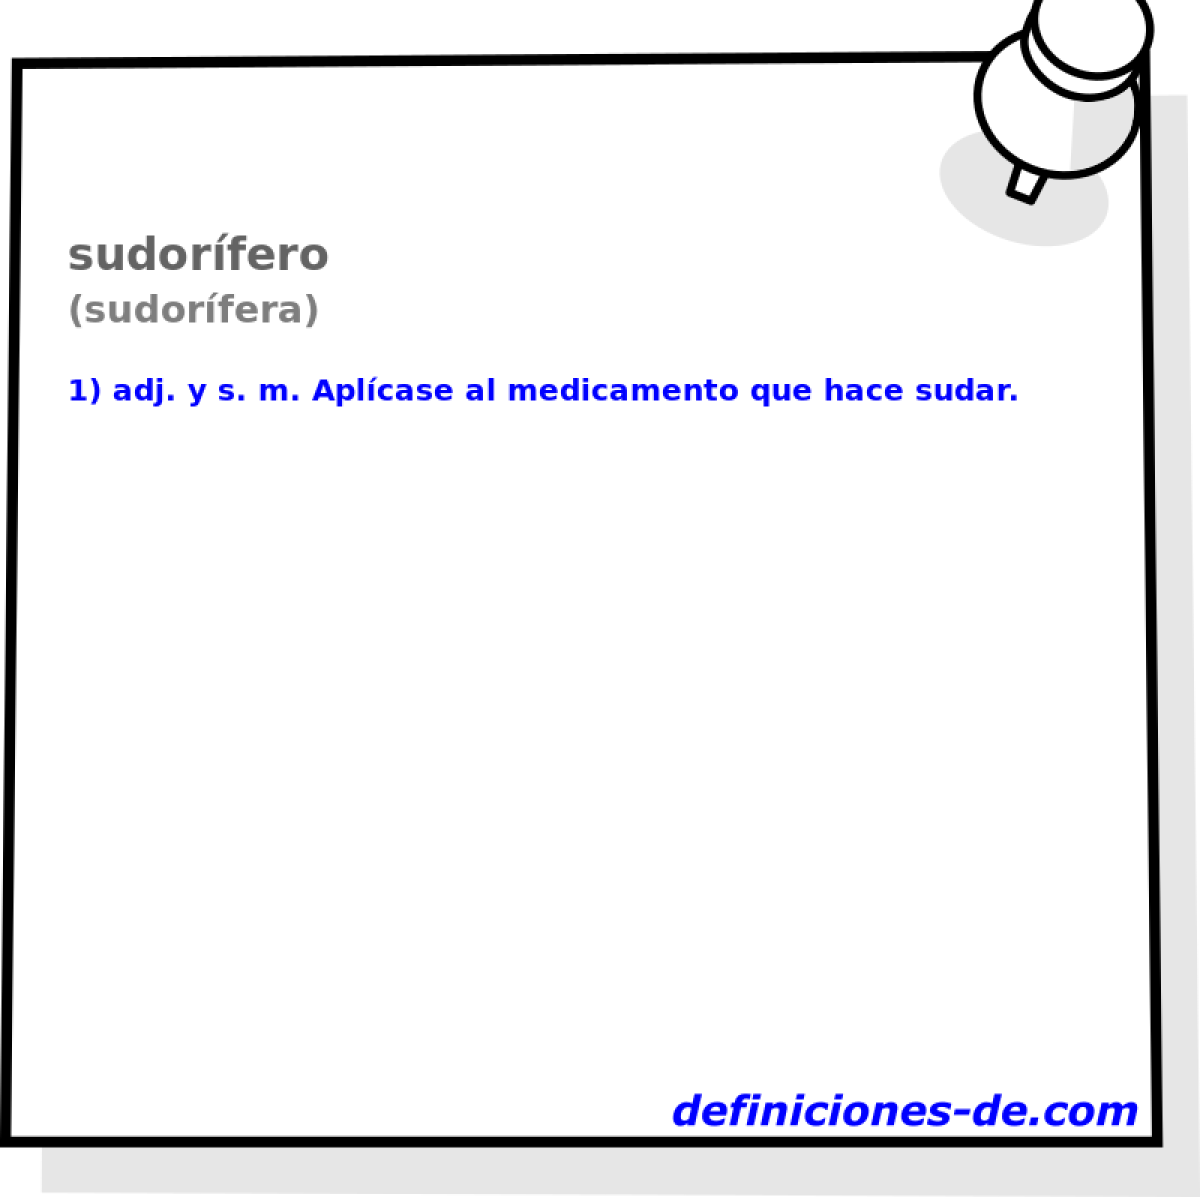 sudorfero (sudorfera)